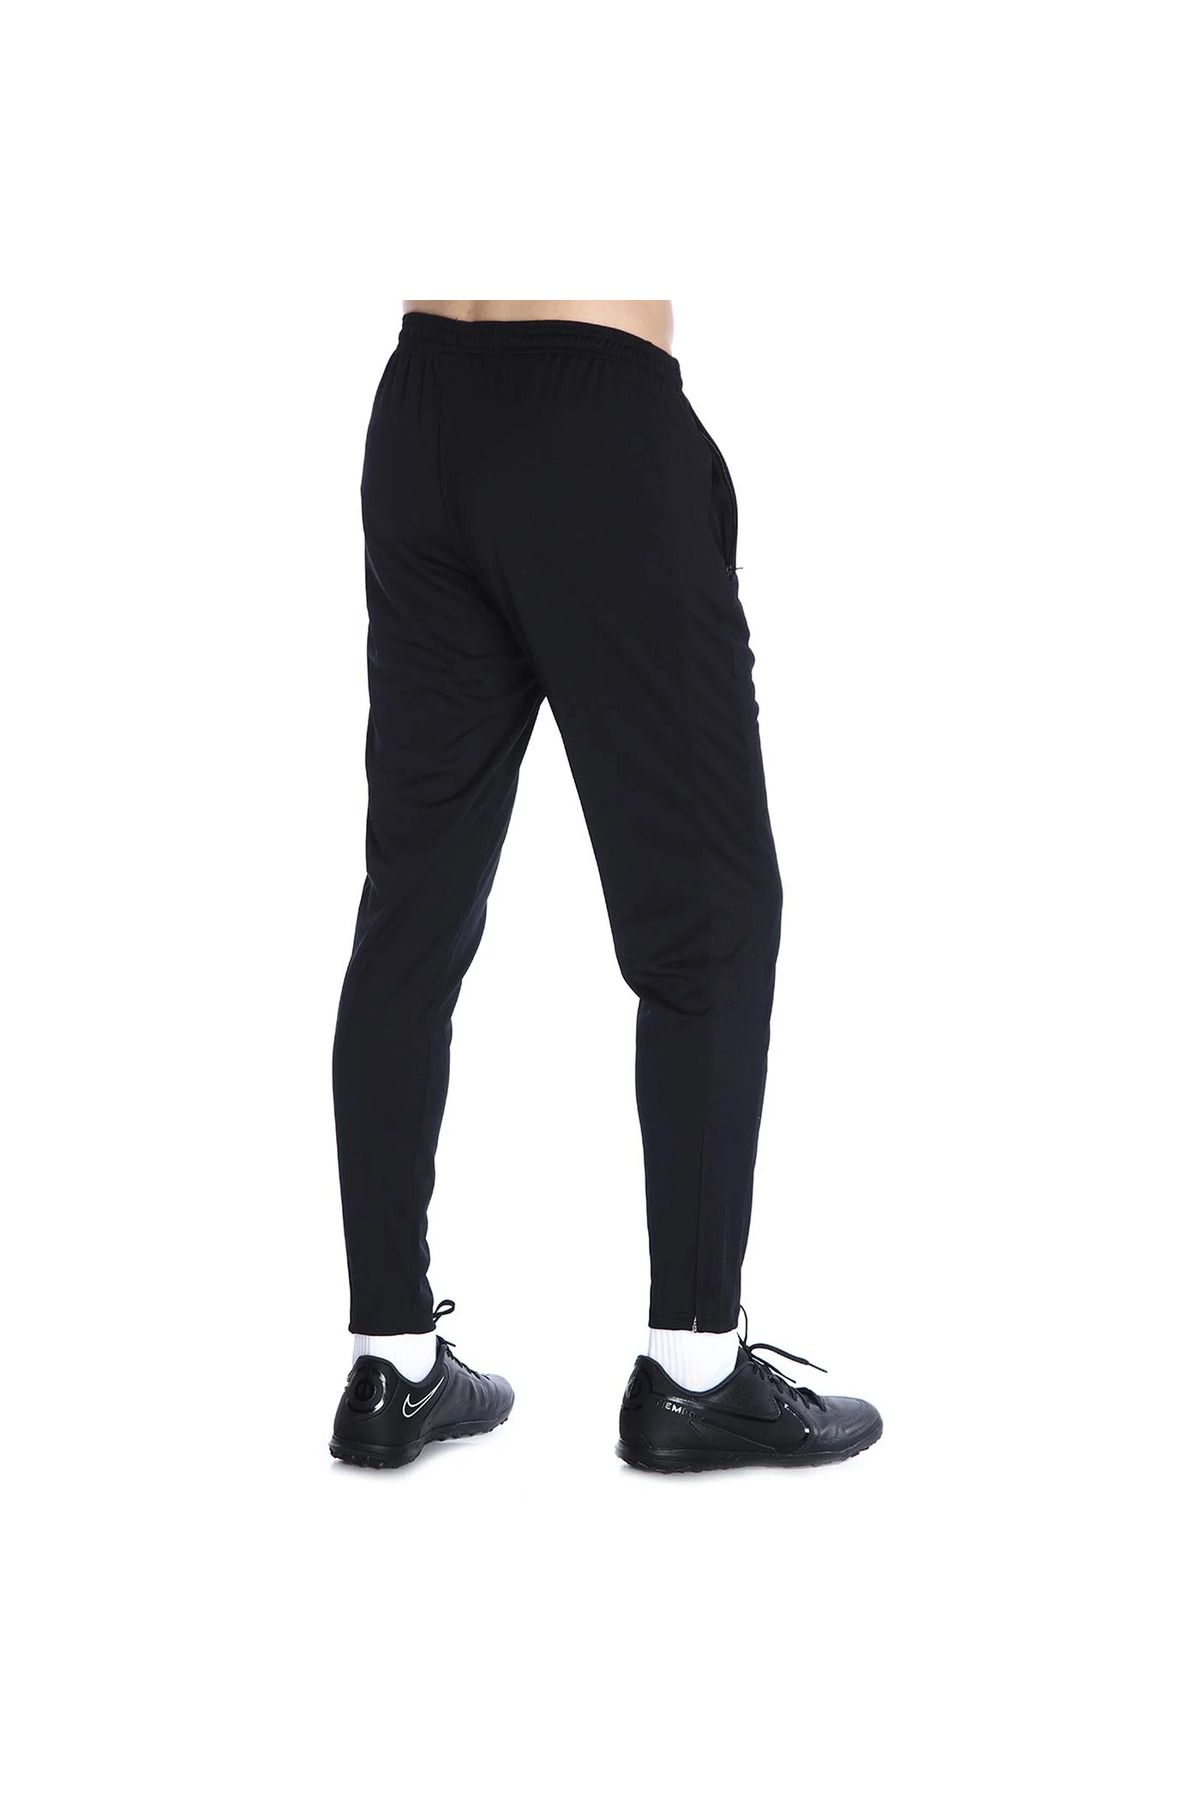 Nike Sports Sweatpants - Beige - Normal Waist - Trendyol